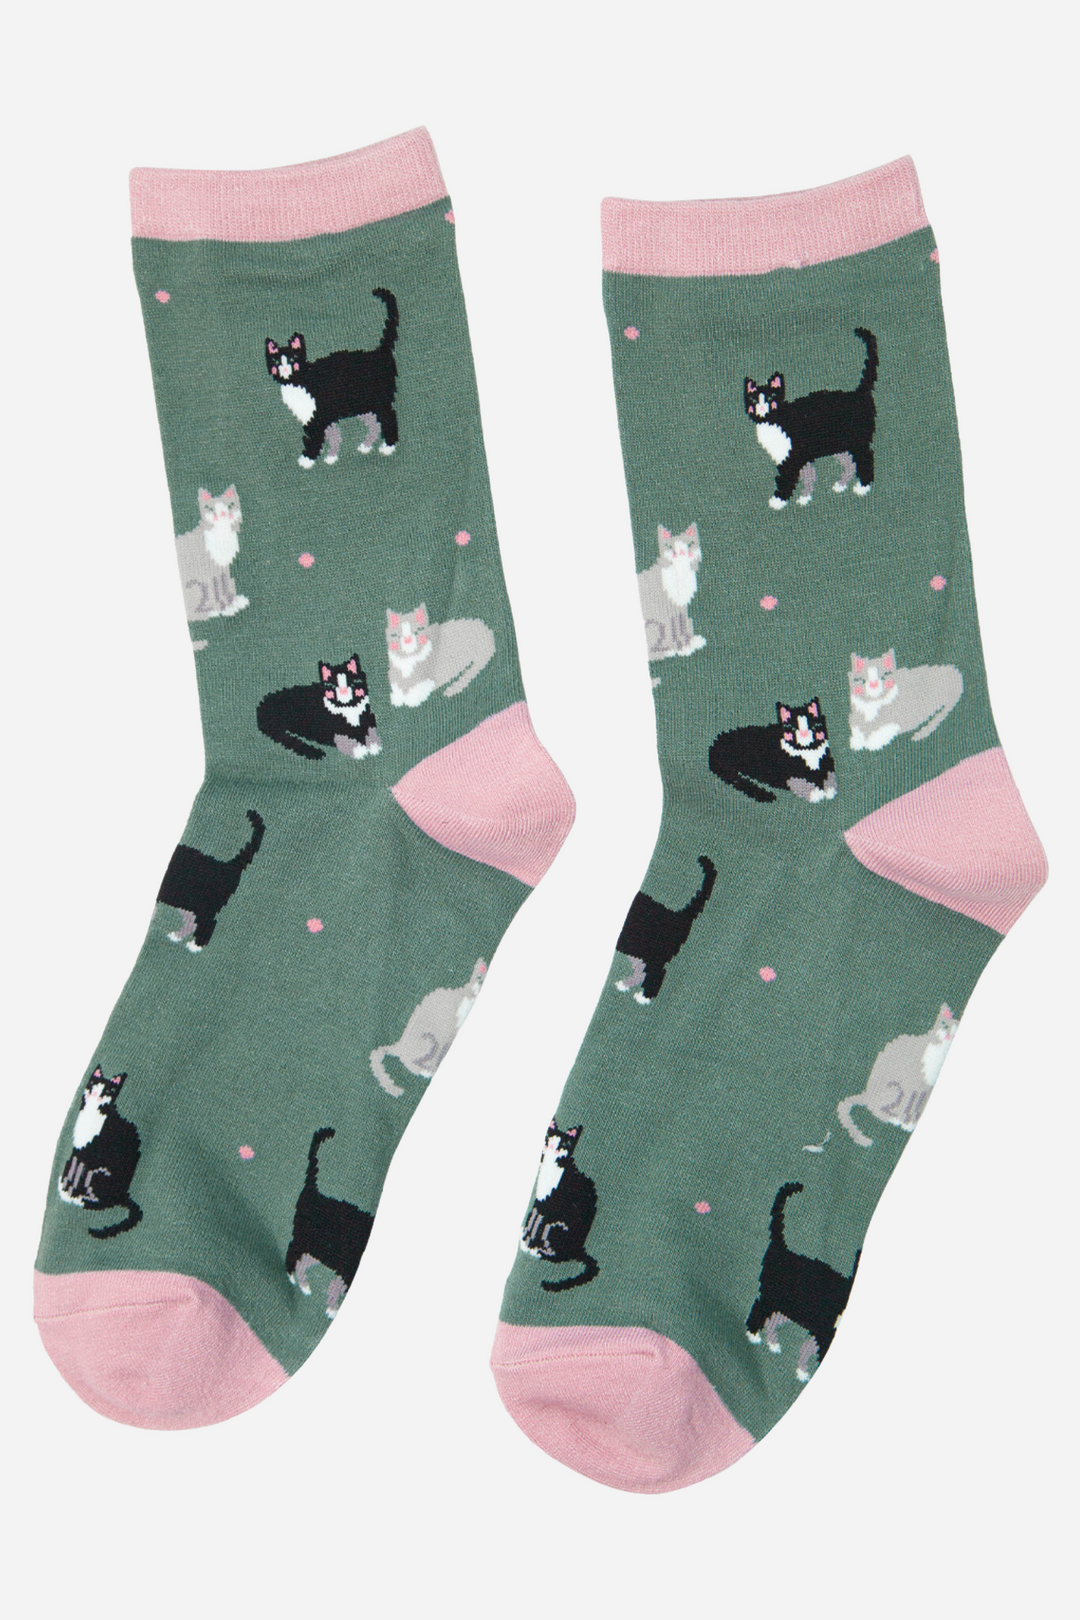 Women's Bamboo Socks Black Cat Ankle Socks Cat Print Novelty Sock Green